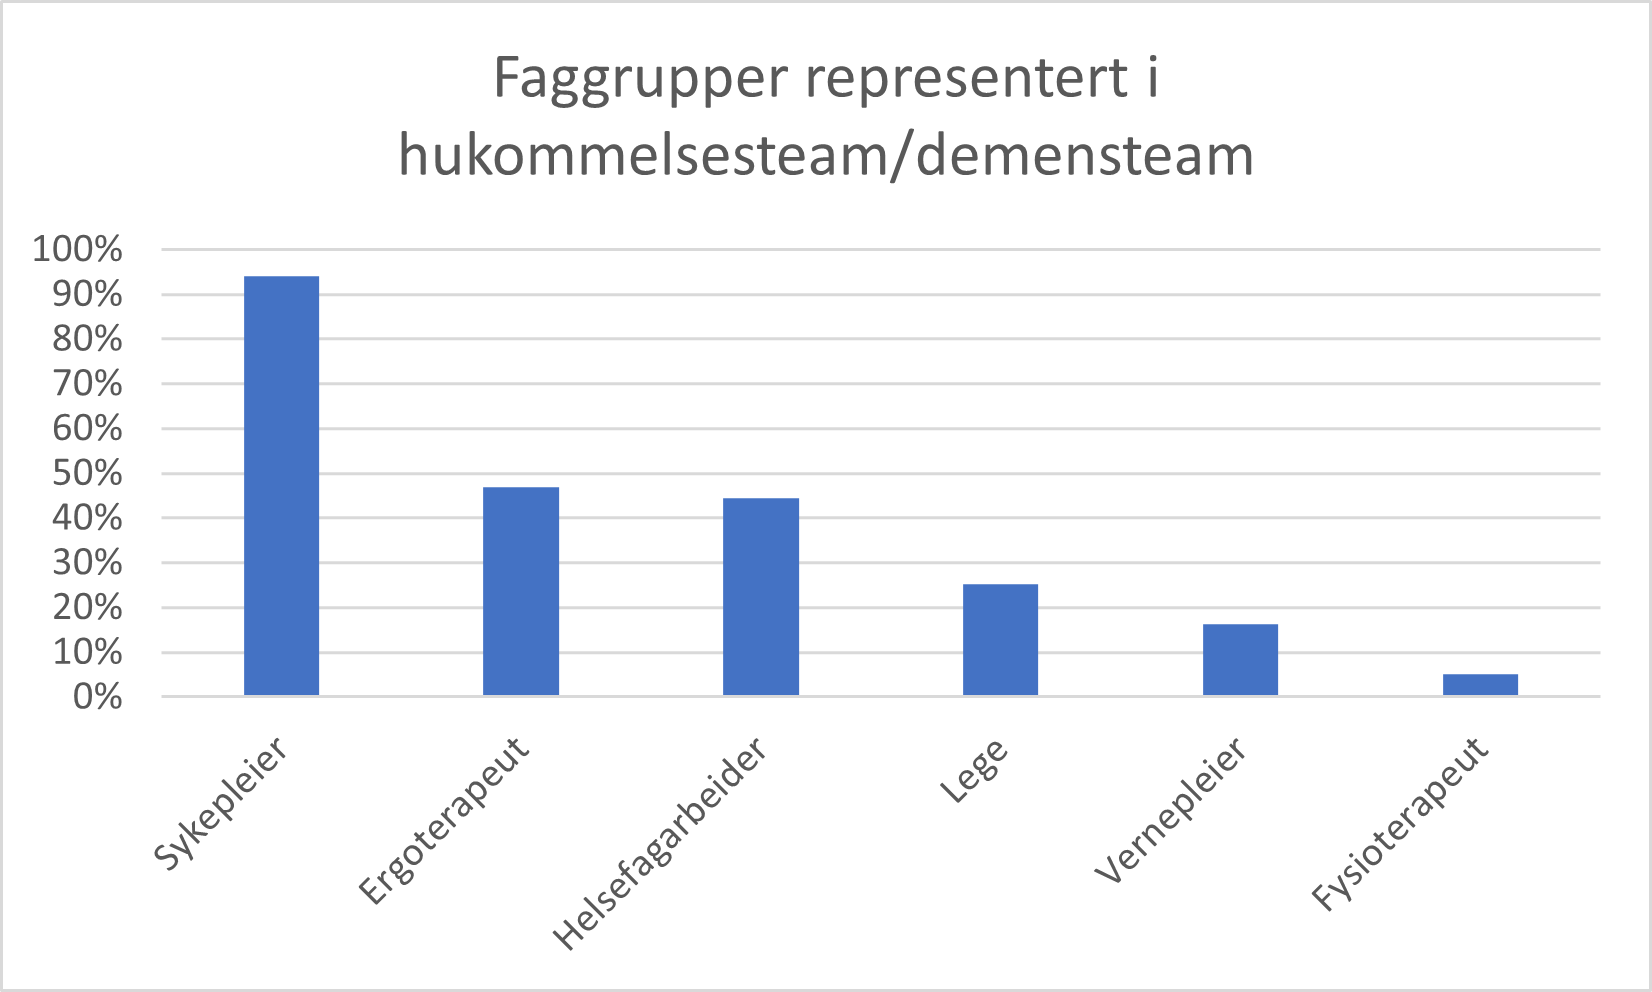 Faggrupper representert i hukommelsesteam/demensteam, i % av kommuner med hukommelsesteam/demensteam